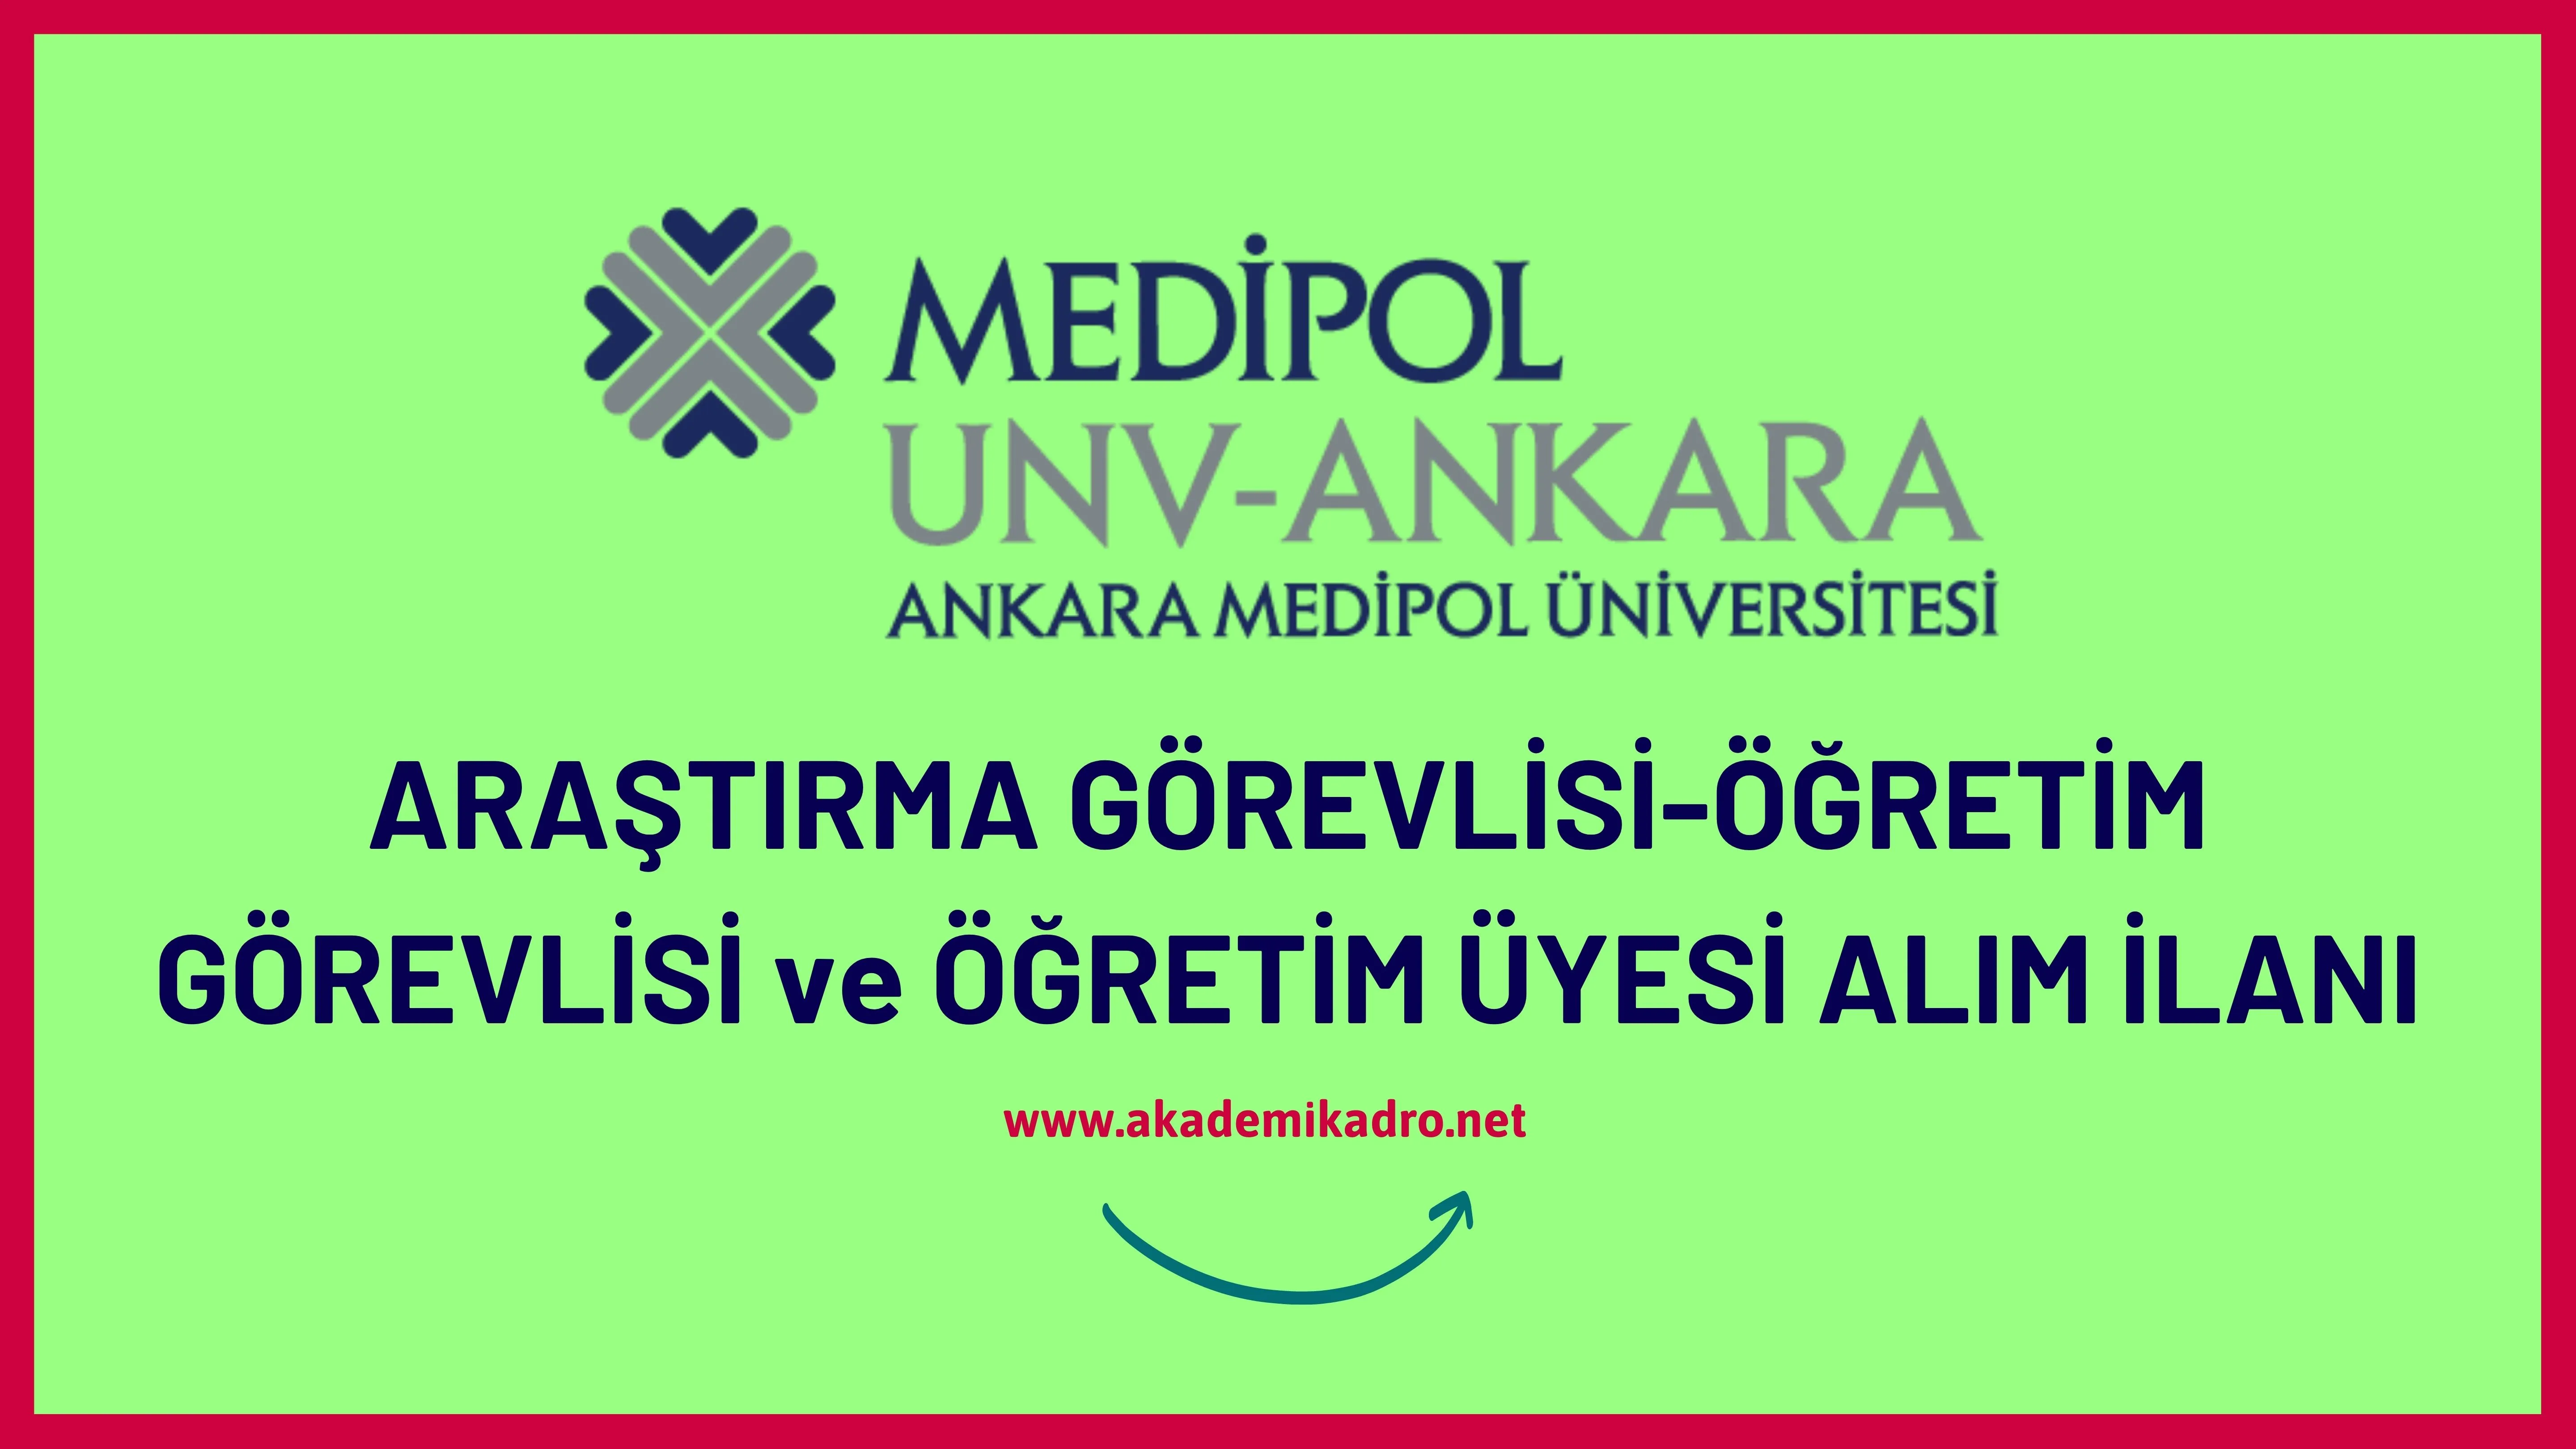 Ankara Medipol Üniversitesi 9 Öğretim görevlisi, 3 Araştırma görevlisi ve 15 Öğretim üyesi alacak.